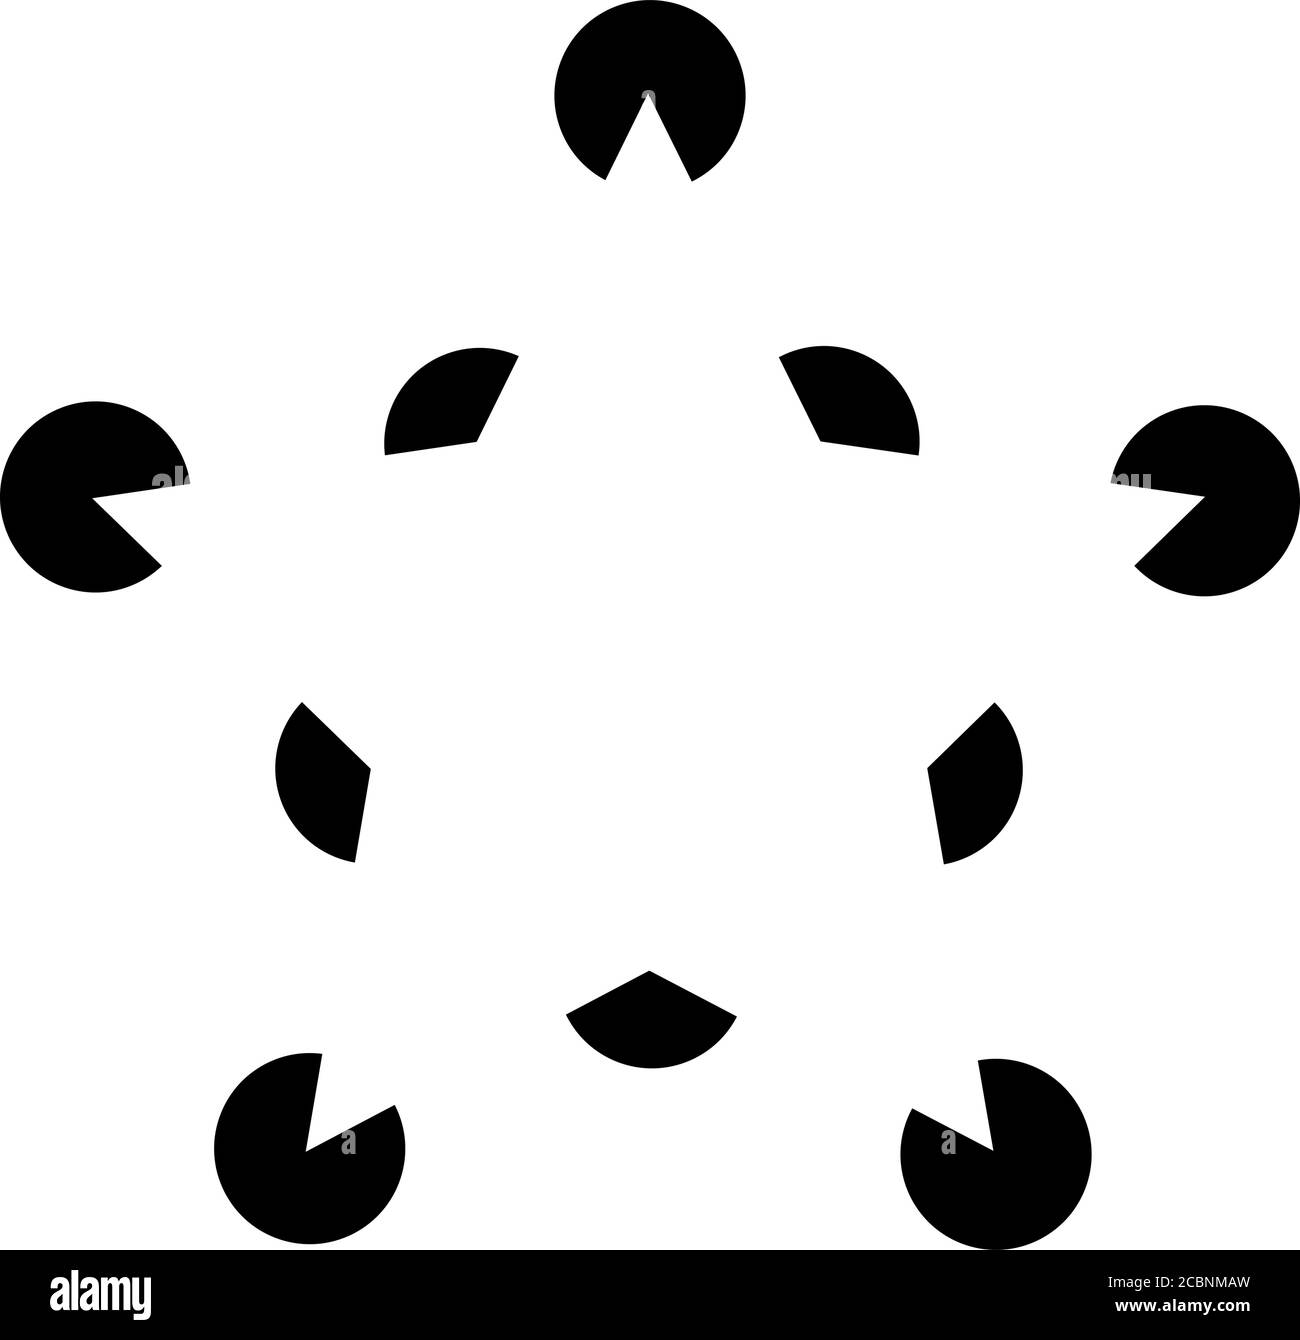 Étoile cachée - illusion optique intelligente Illustration de Vecteur